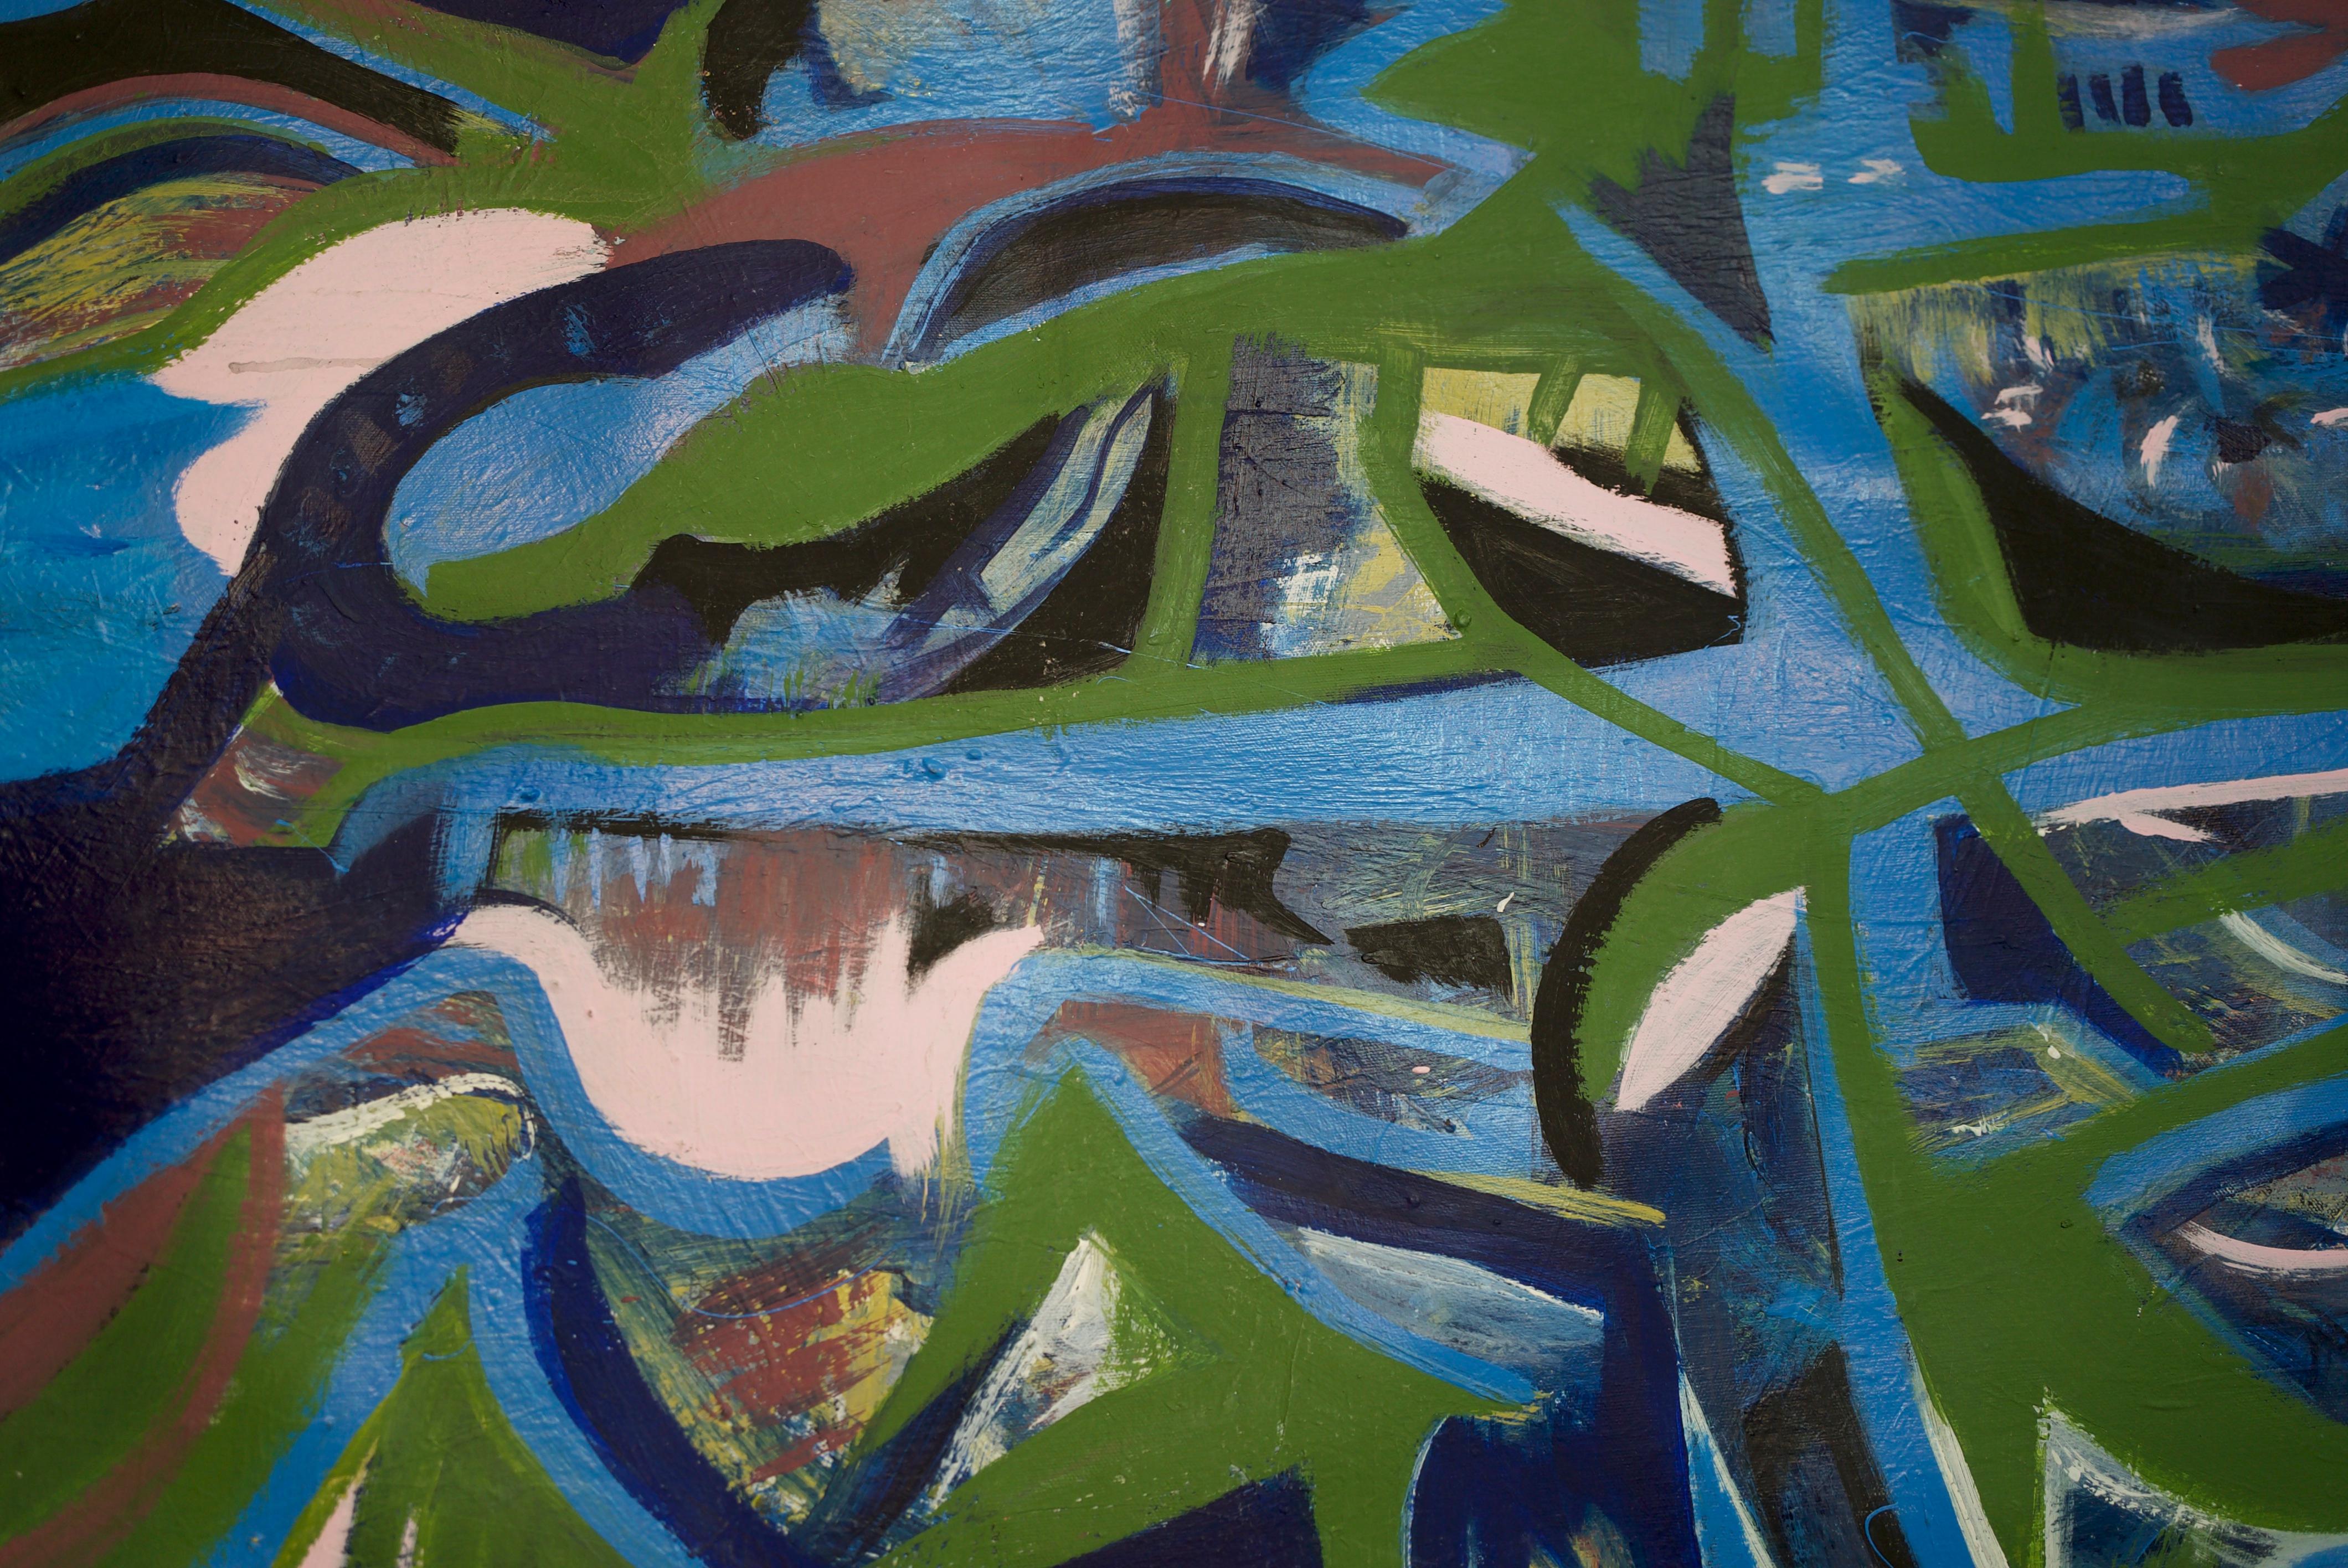 Jungla, Art contemporain, Peinture abstraite, 21ème siècle - Bleu Abstract Painting par Fernando Esteban